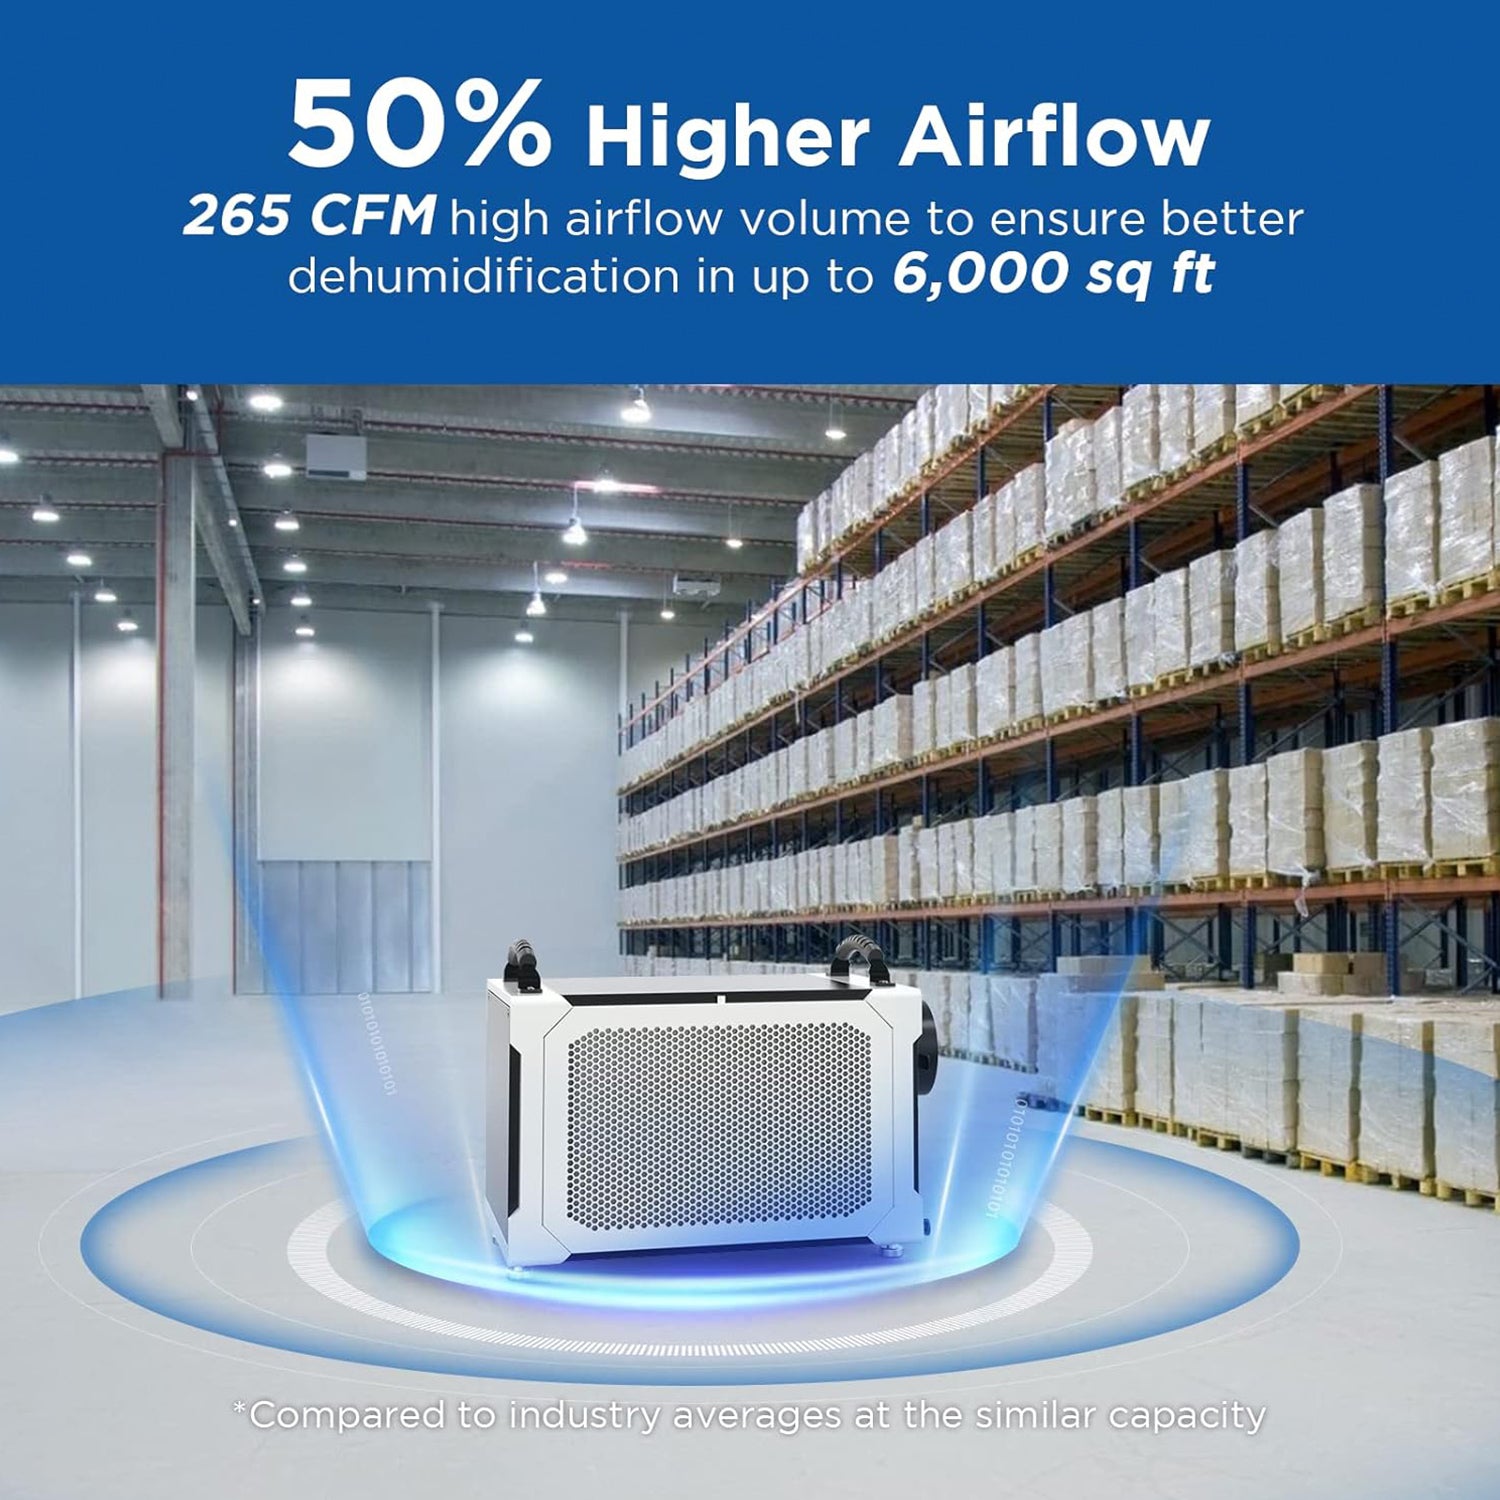 50% higher airflow